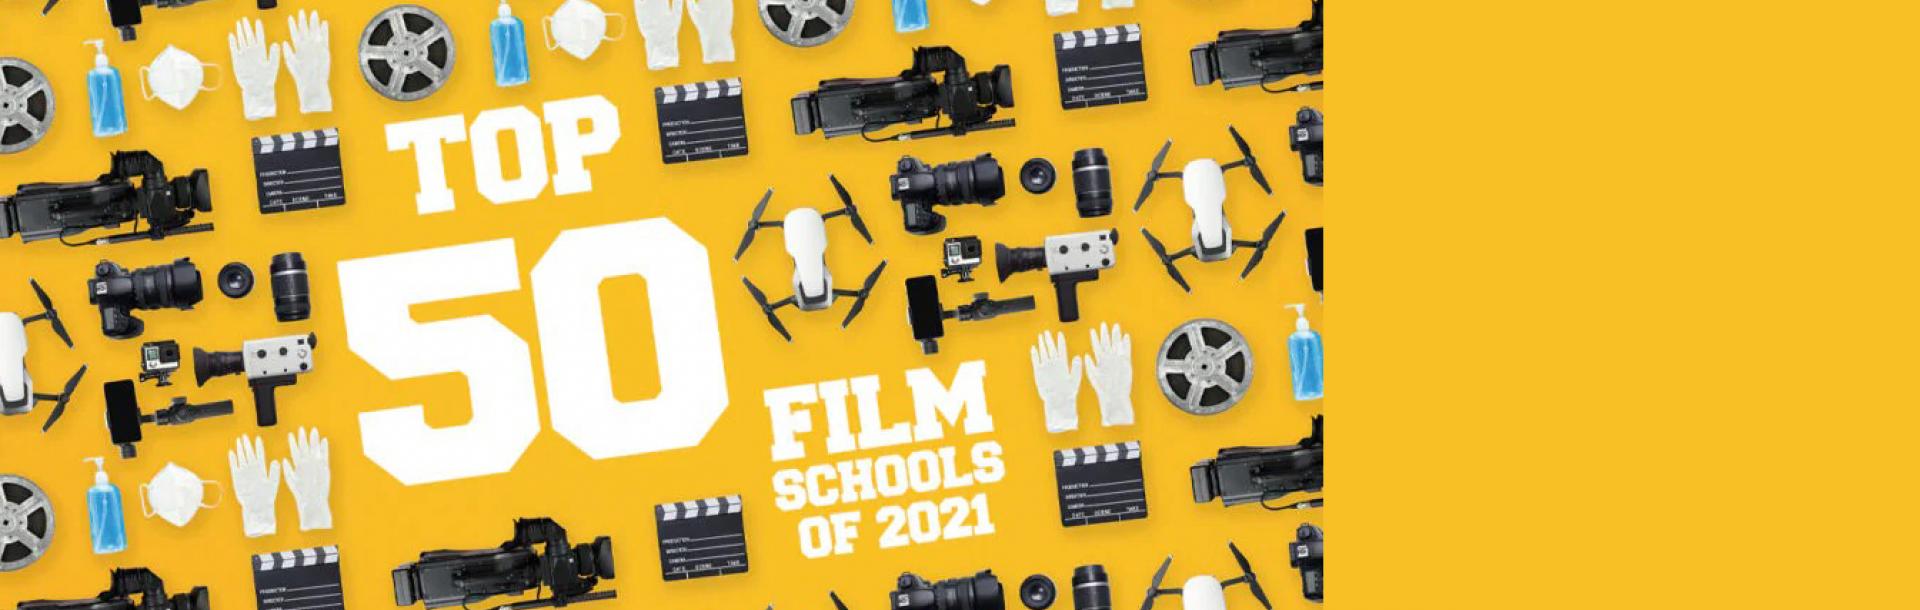 מגזין התעשייה האמריקאי The Wrap פרסם את הרשימה הבינלאומית לשנת 2021 של 21 בתי הספר לקולנוע הטובים ביותר בעולם: ביה&quot;ס לקולנוע וטלוויזיה ע&quot;ש סטיב טיש באוניברסיטת תל אביב ביניהם.

